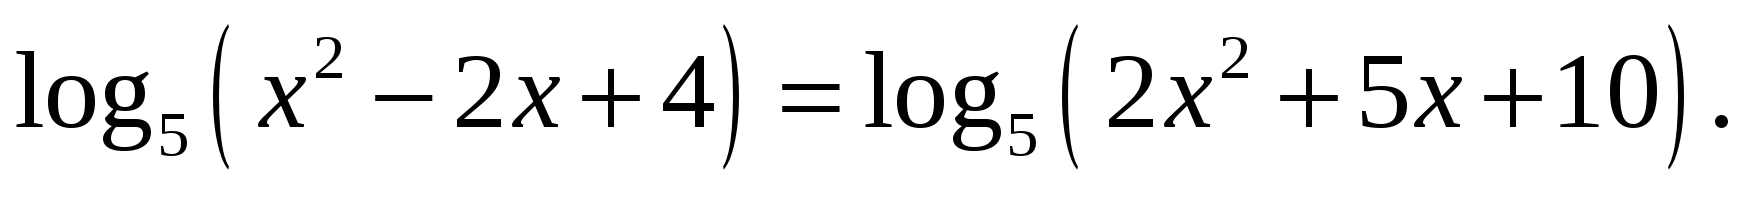 Самостоятельная работа логарифмические уравнения неравенства